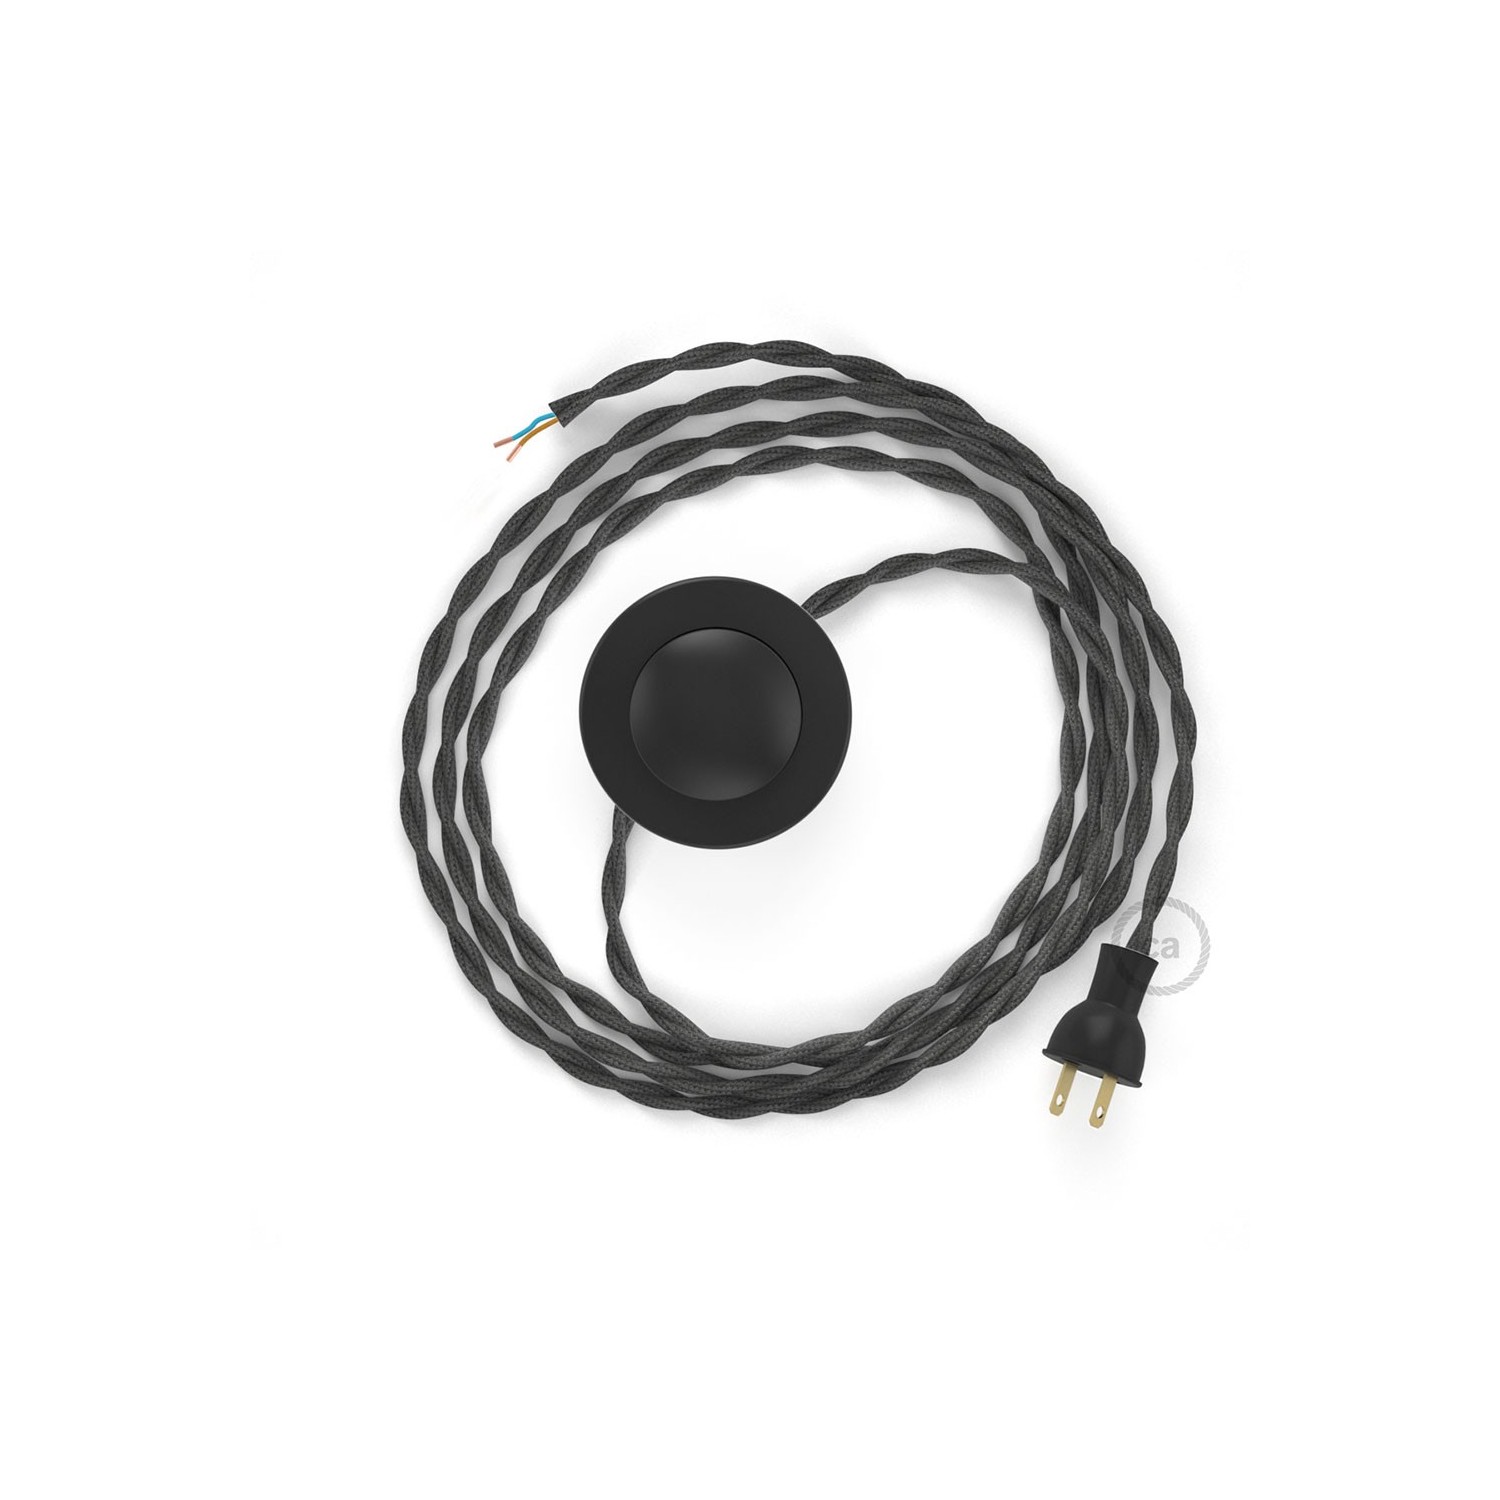 Cableado para lámpara de piso, cable TM26 Rayón Gris Oscuro 3 m. Elige tu el color de la clavija y del interruptor!